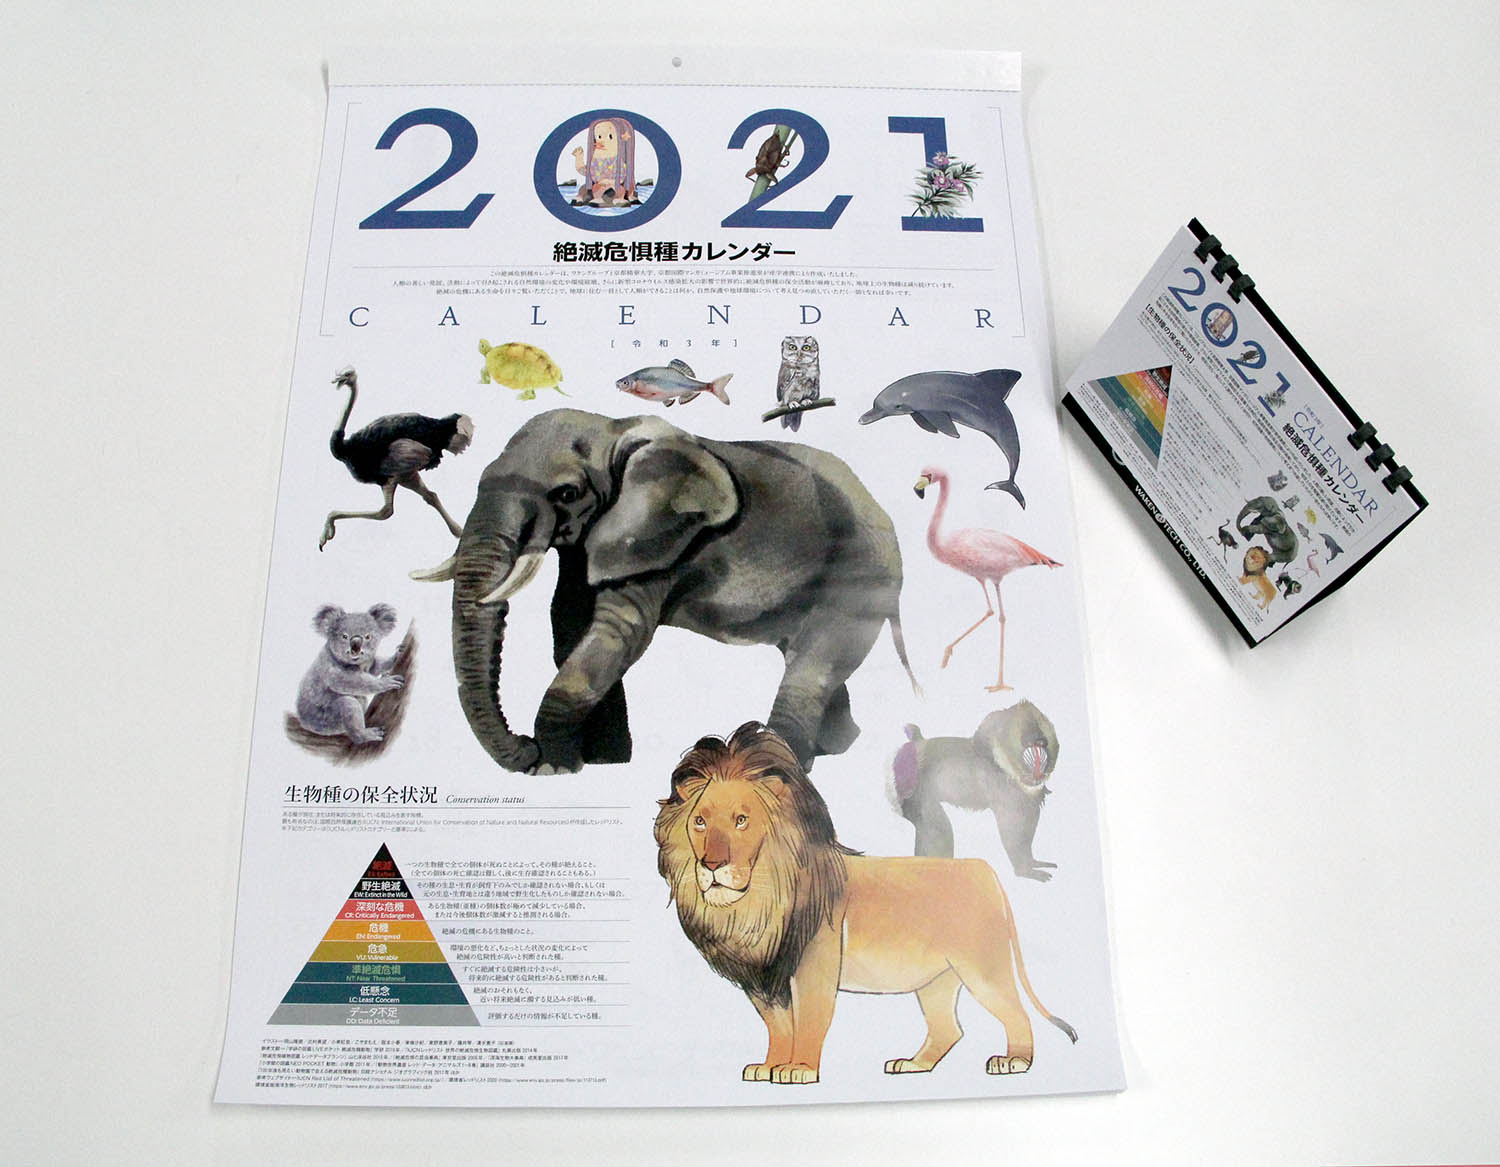 マンガ学部在学生が ワケングループ21年度カレンダーの挿絵を制作 365日すべての日付に 絶滅危惧種に指定された動植物のイラストを掲載 京都精華大学